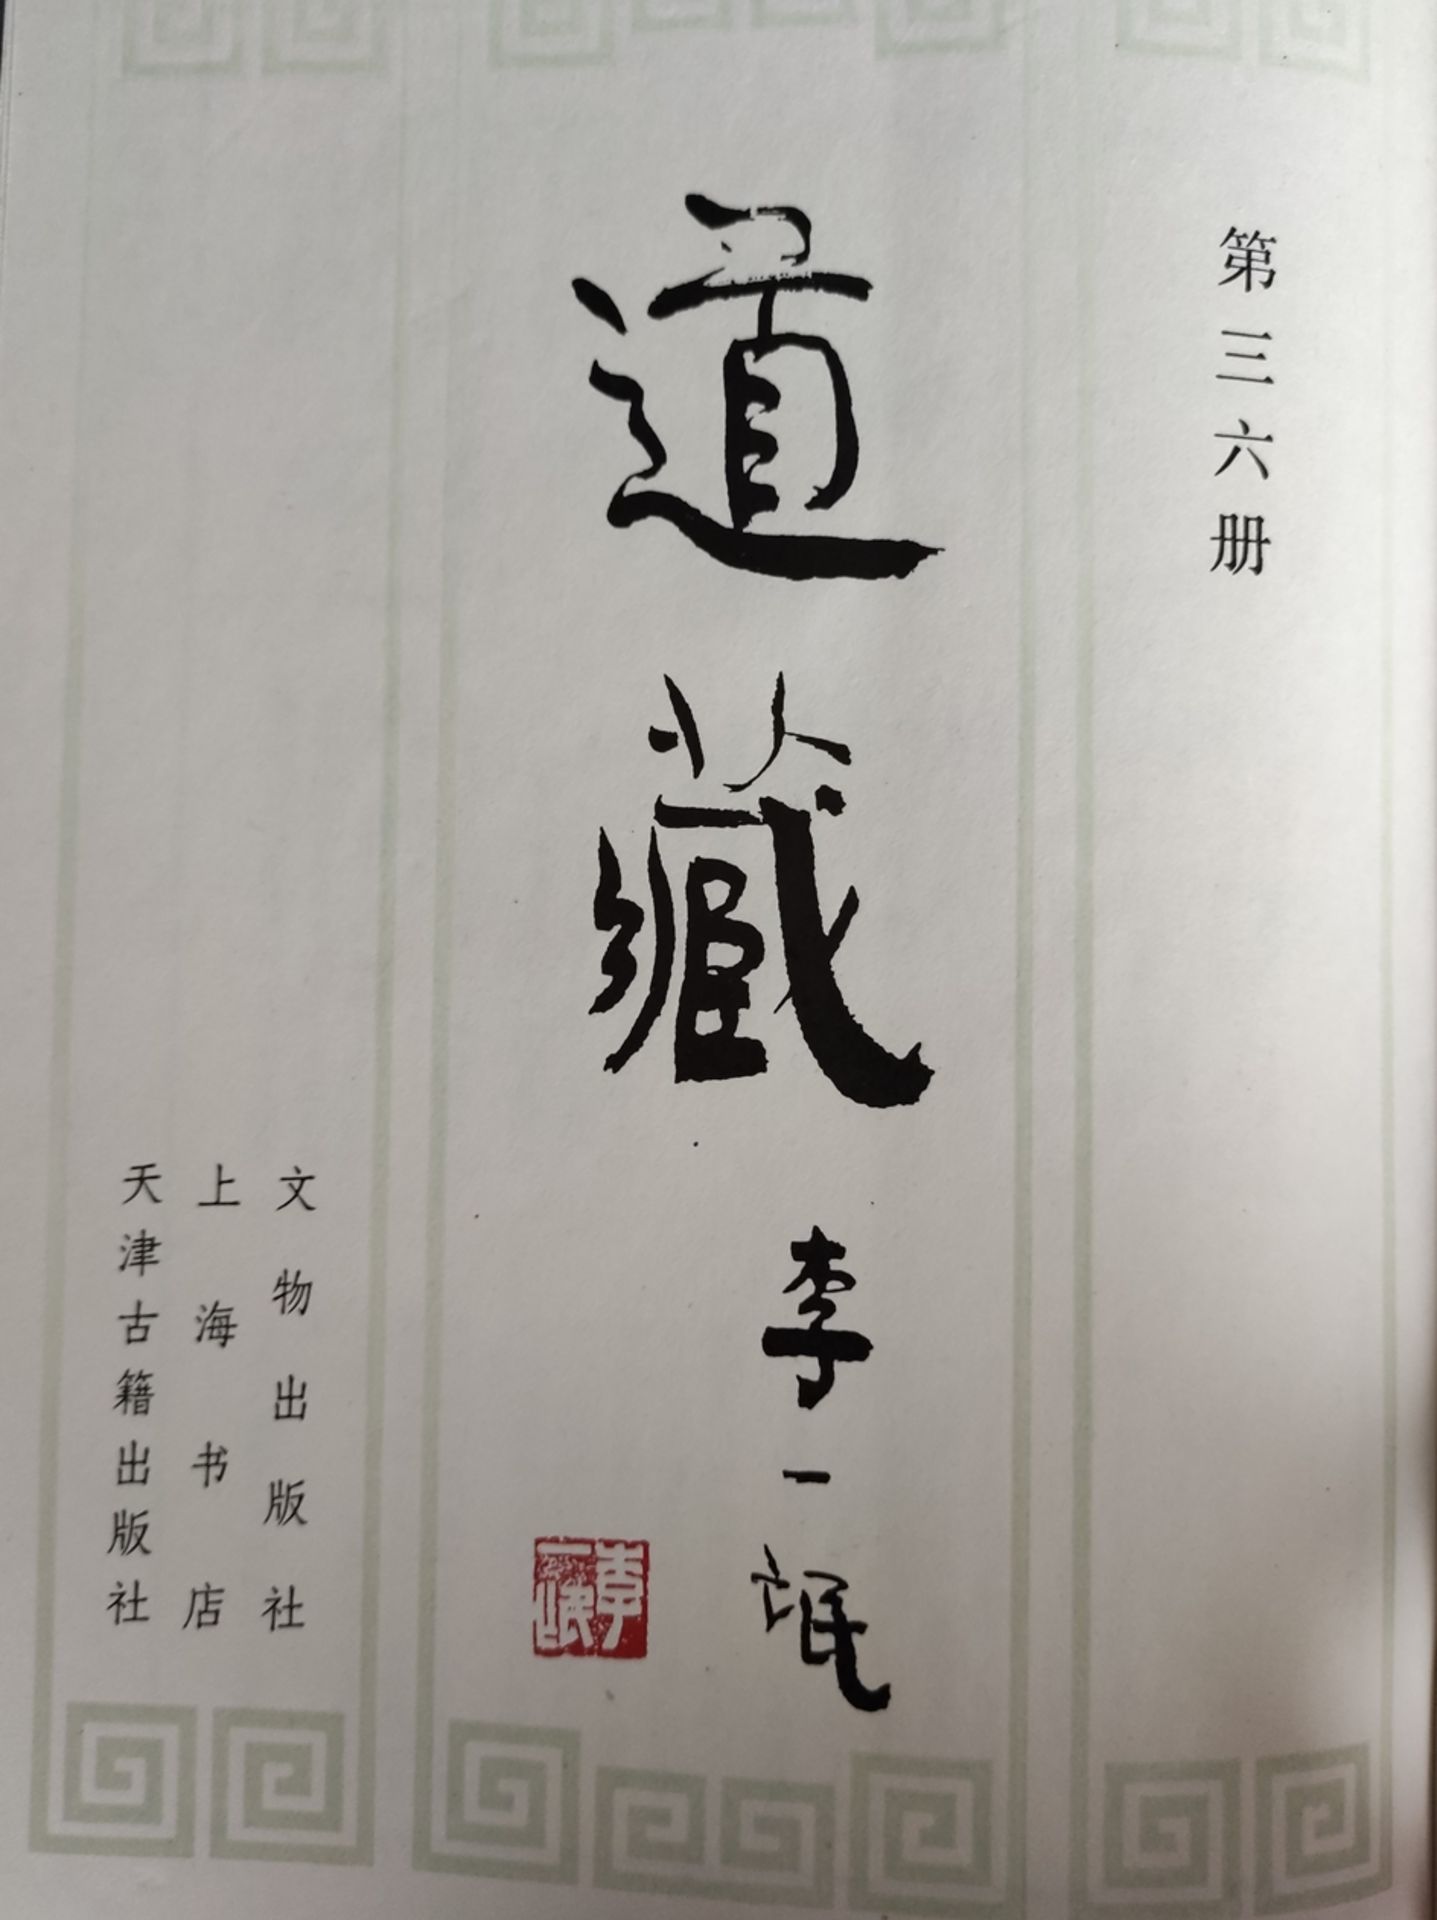 35 volumes "Dai Zang"/Taoism", each in slipcase, volume 2 missing, 1988, Beijing: Wen wu chu ban sh